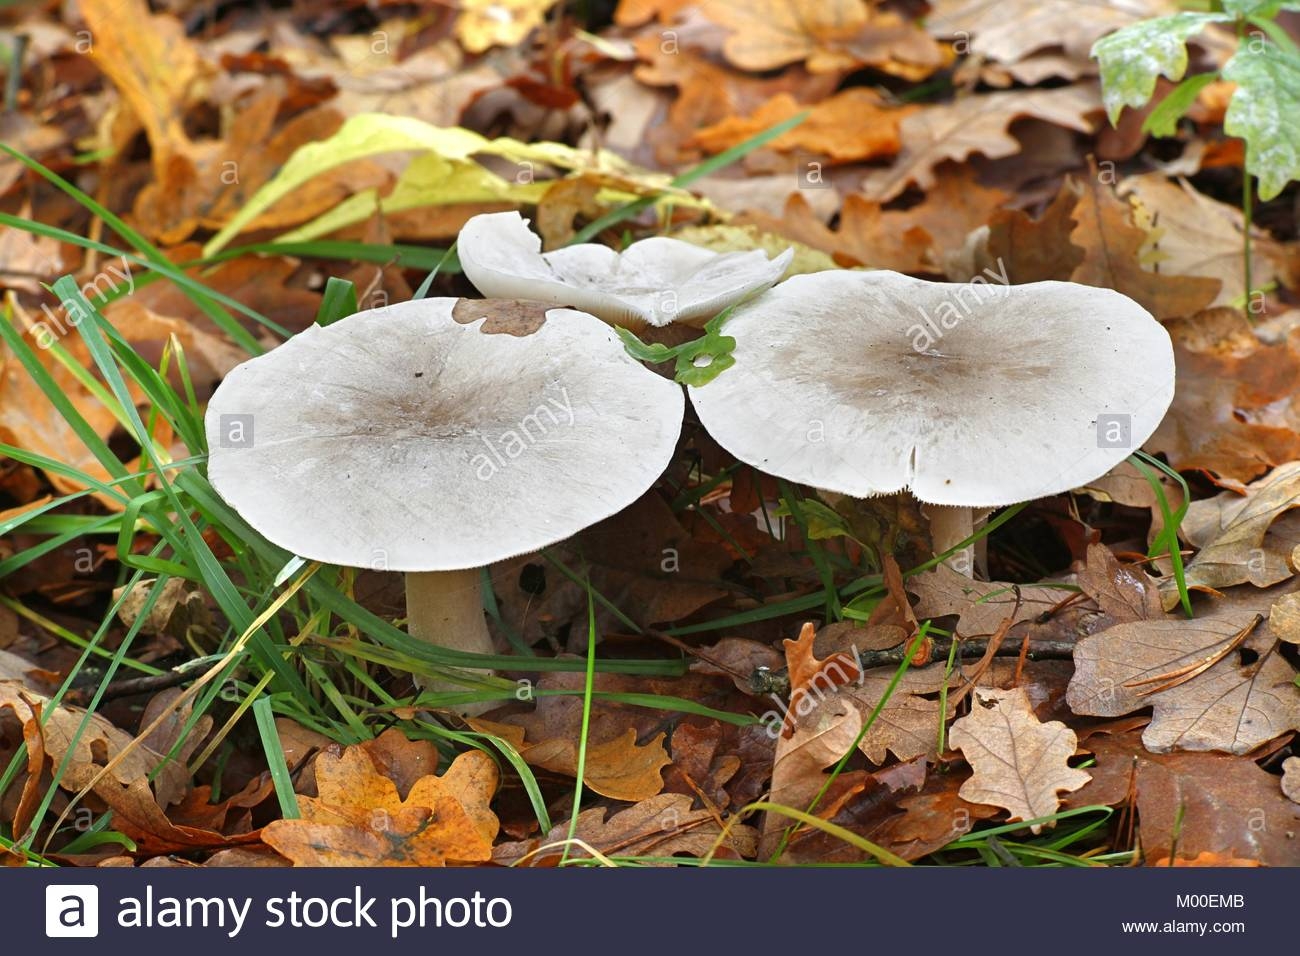 рядовки грибы фото несъедобные как отличить